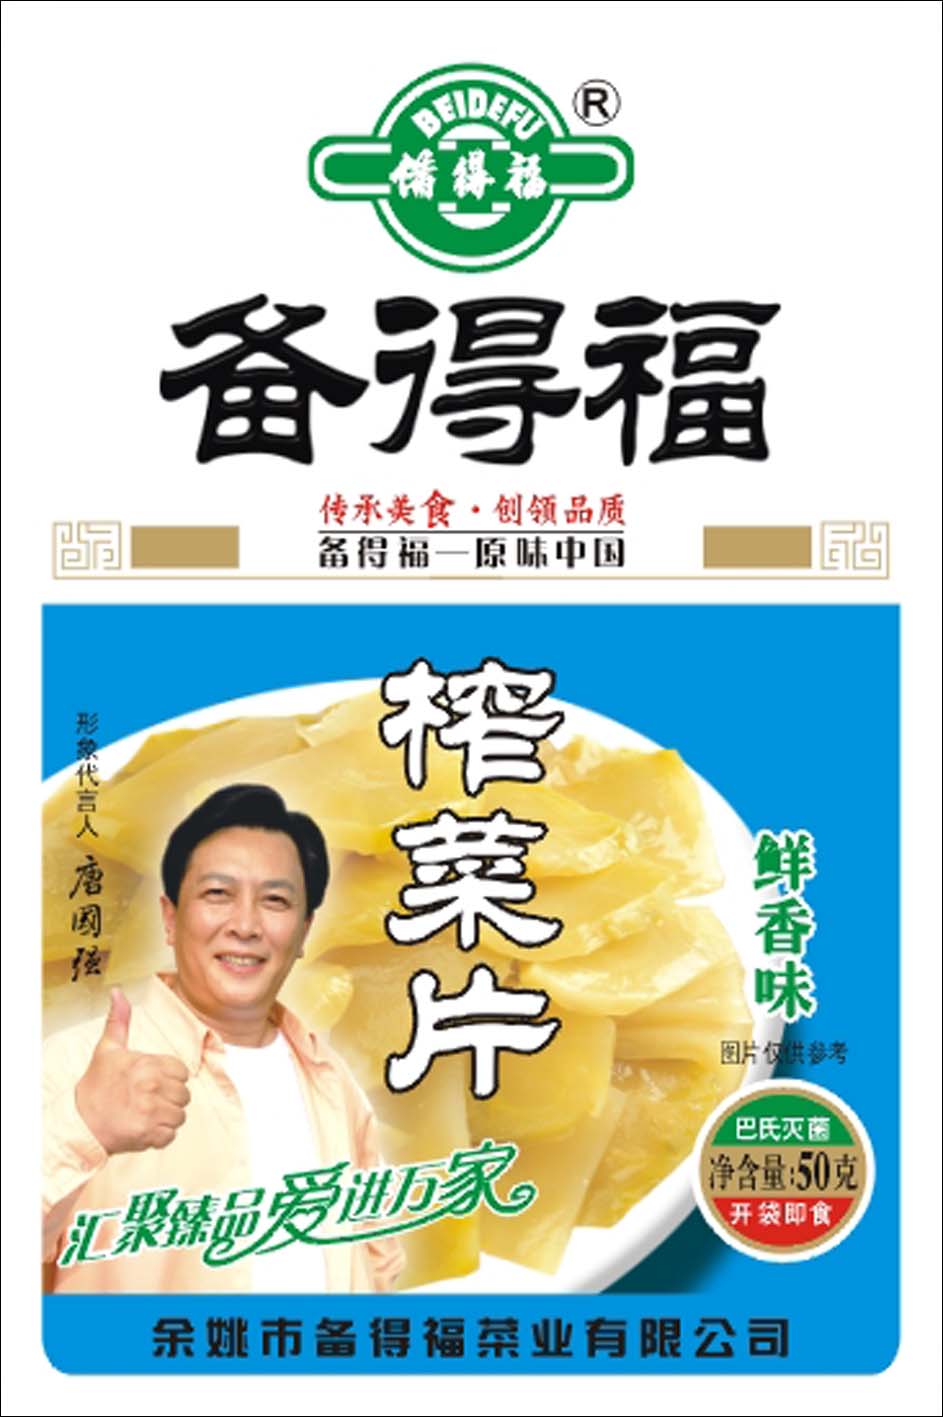 唐国强榨菜广告图片